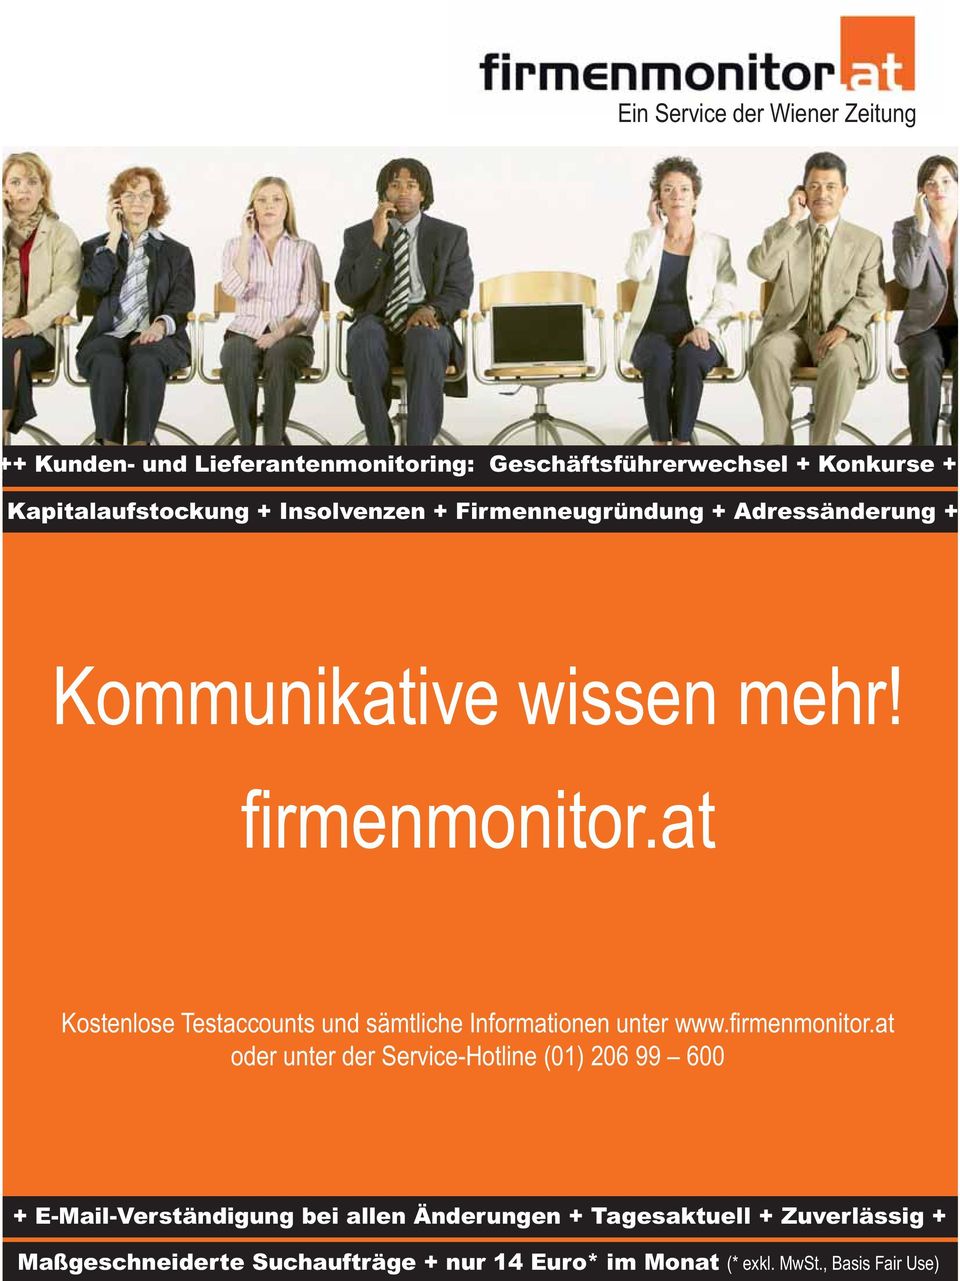 at Kostenlose Testaccounts und sämtliche Informationen unter www.firmenmonitor.